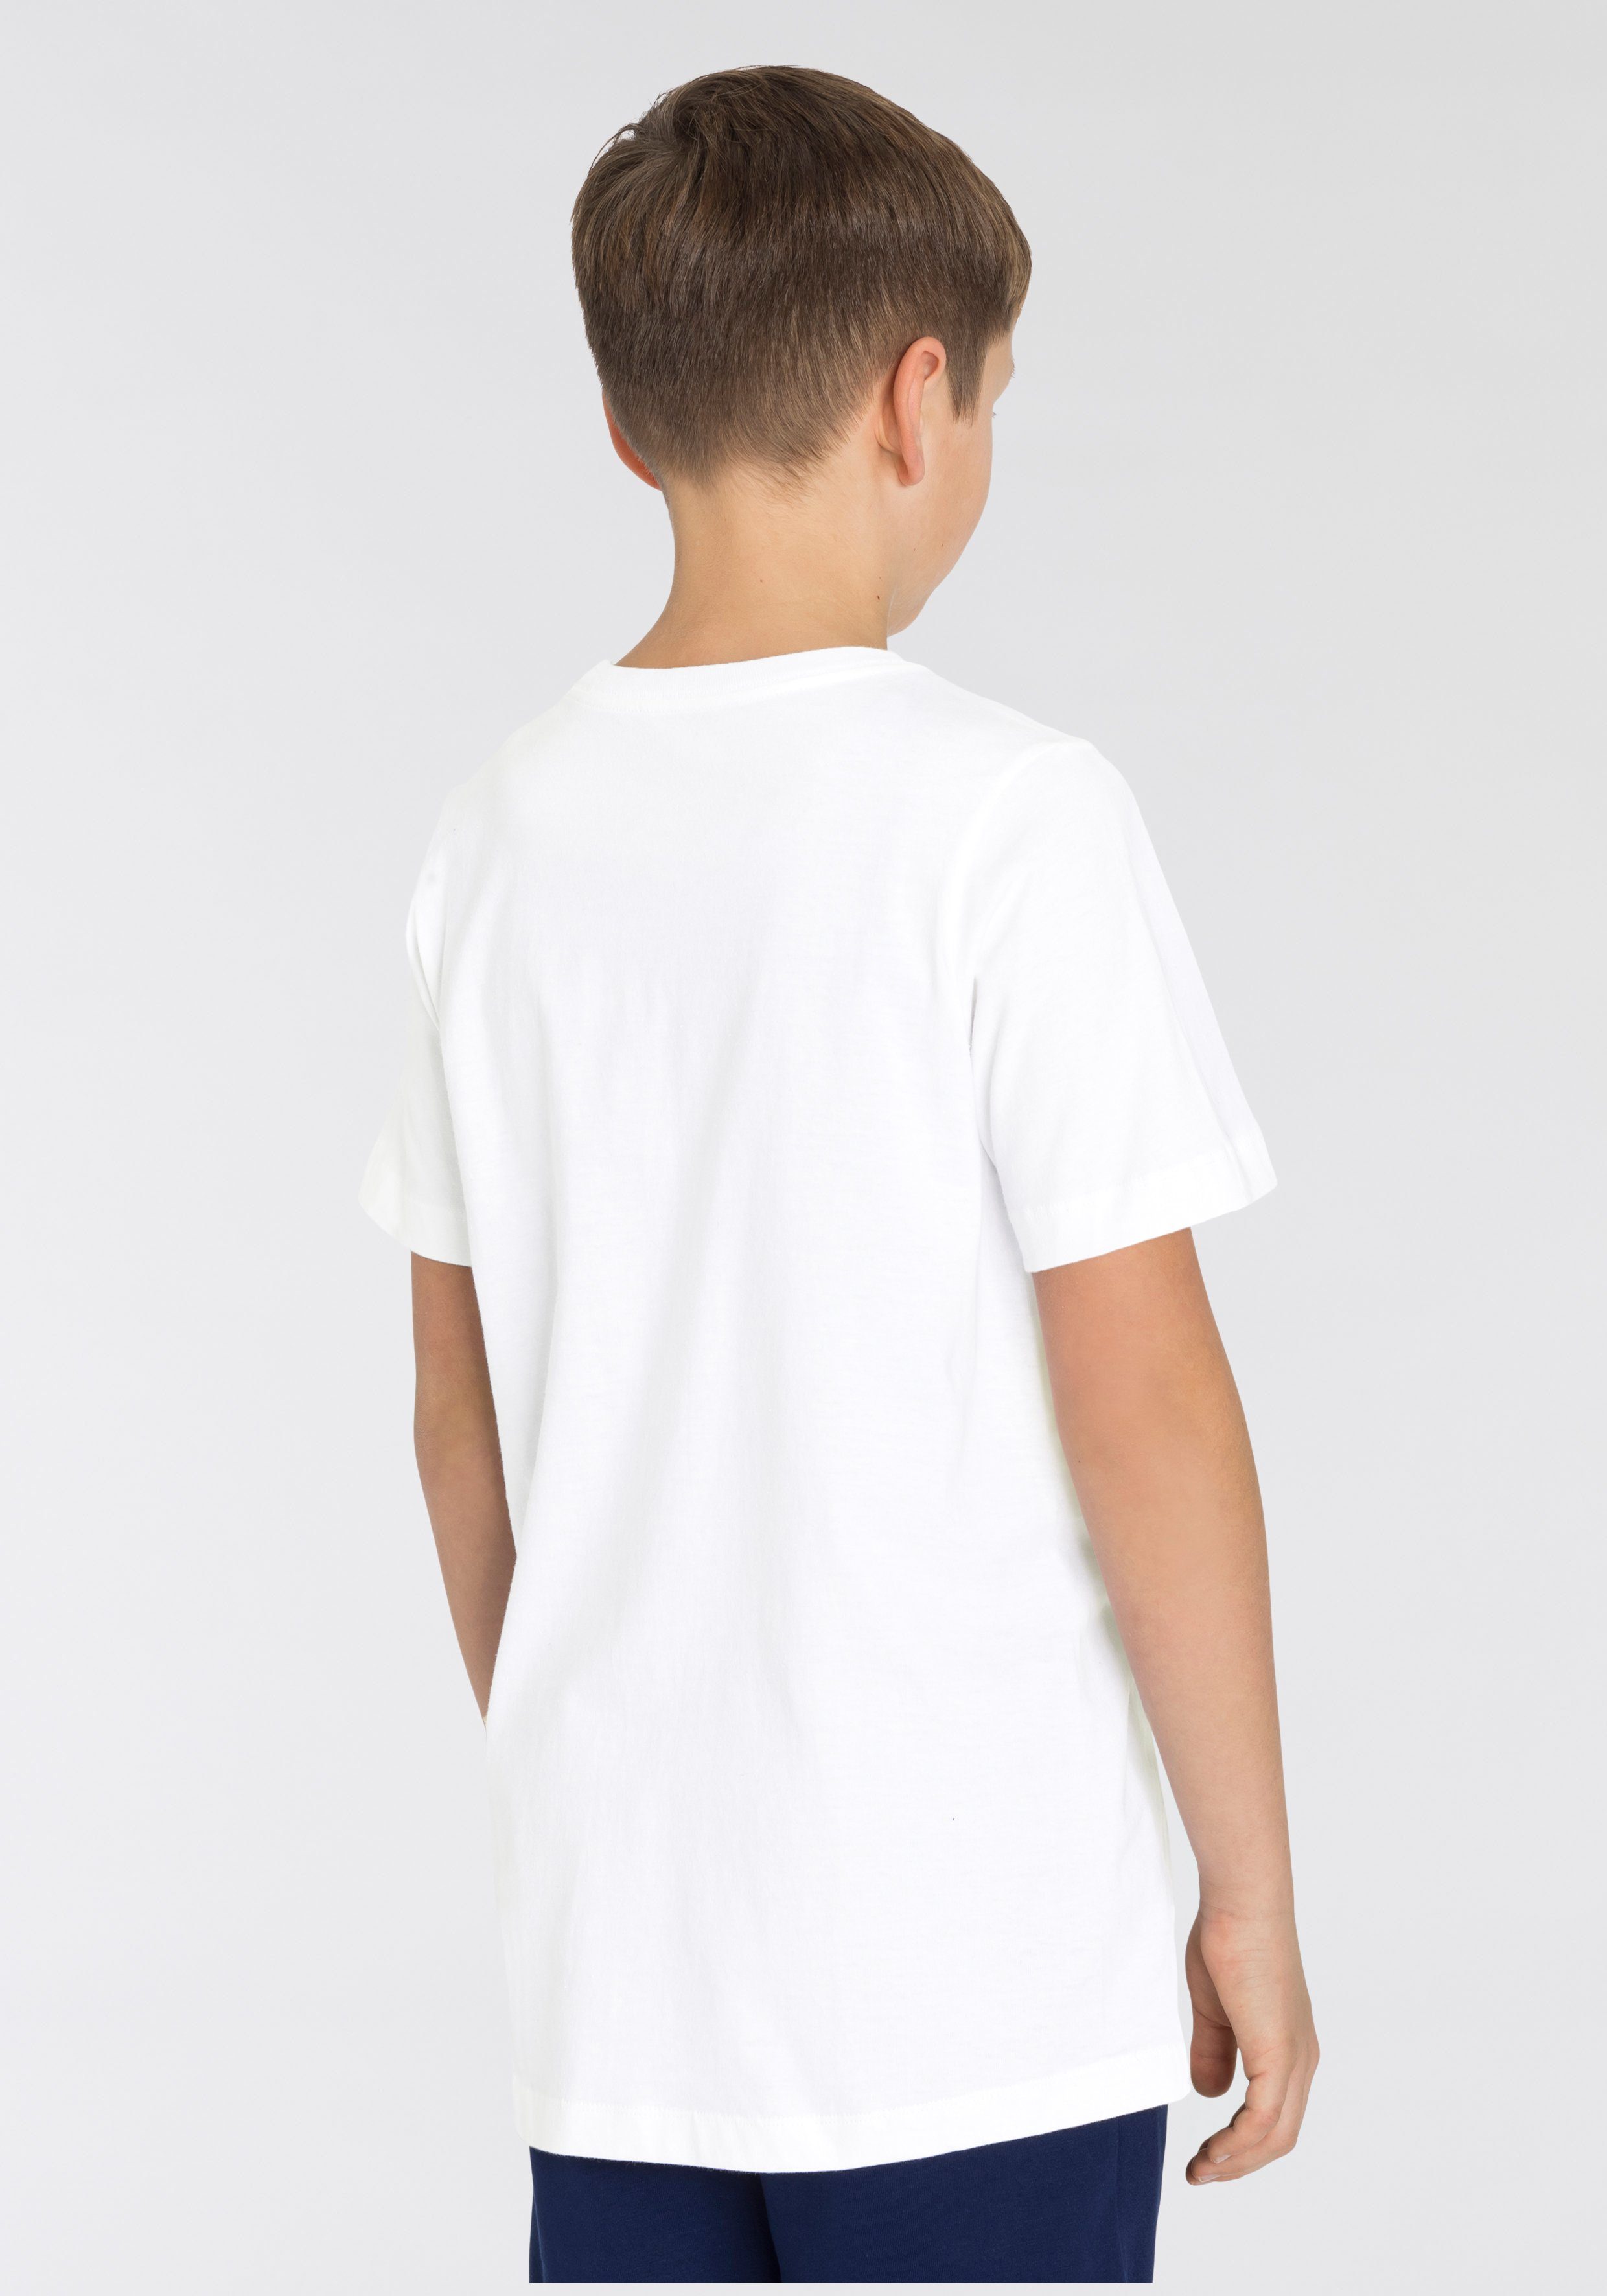 BIG T-SHIRT T-Shirt KIDS' weiß Sportswear Nike